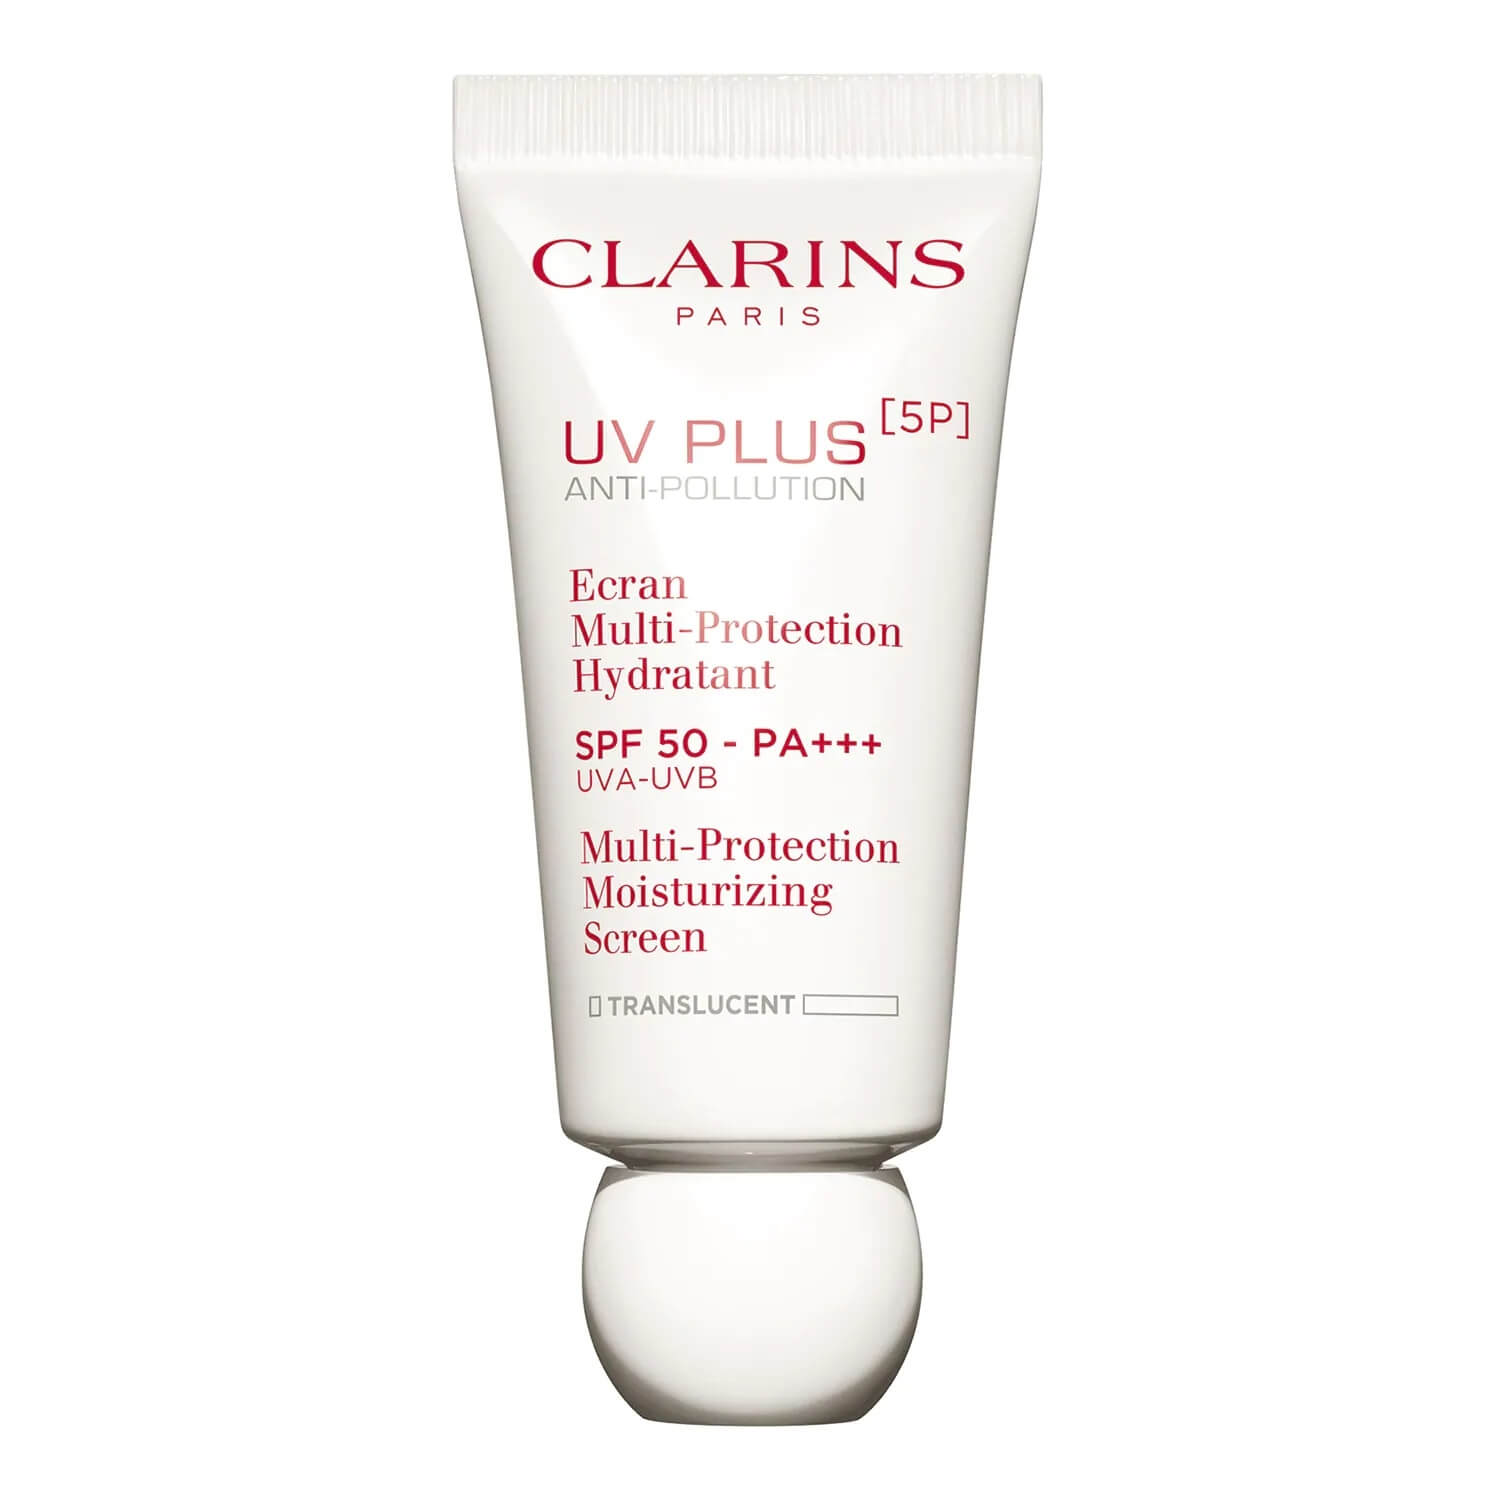 Clarins Víceúčelová ochranná emulze SPF 50 UV Plus Anti-pollution (Multi Protection Moisturizing Screen) 30 ml Translucent